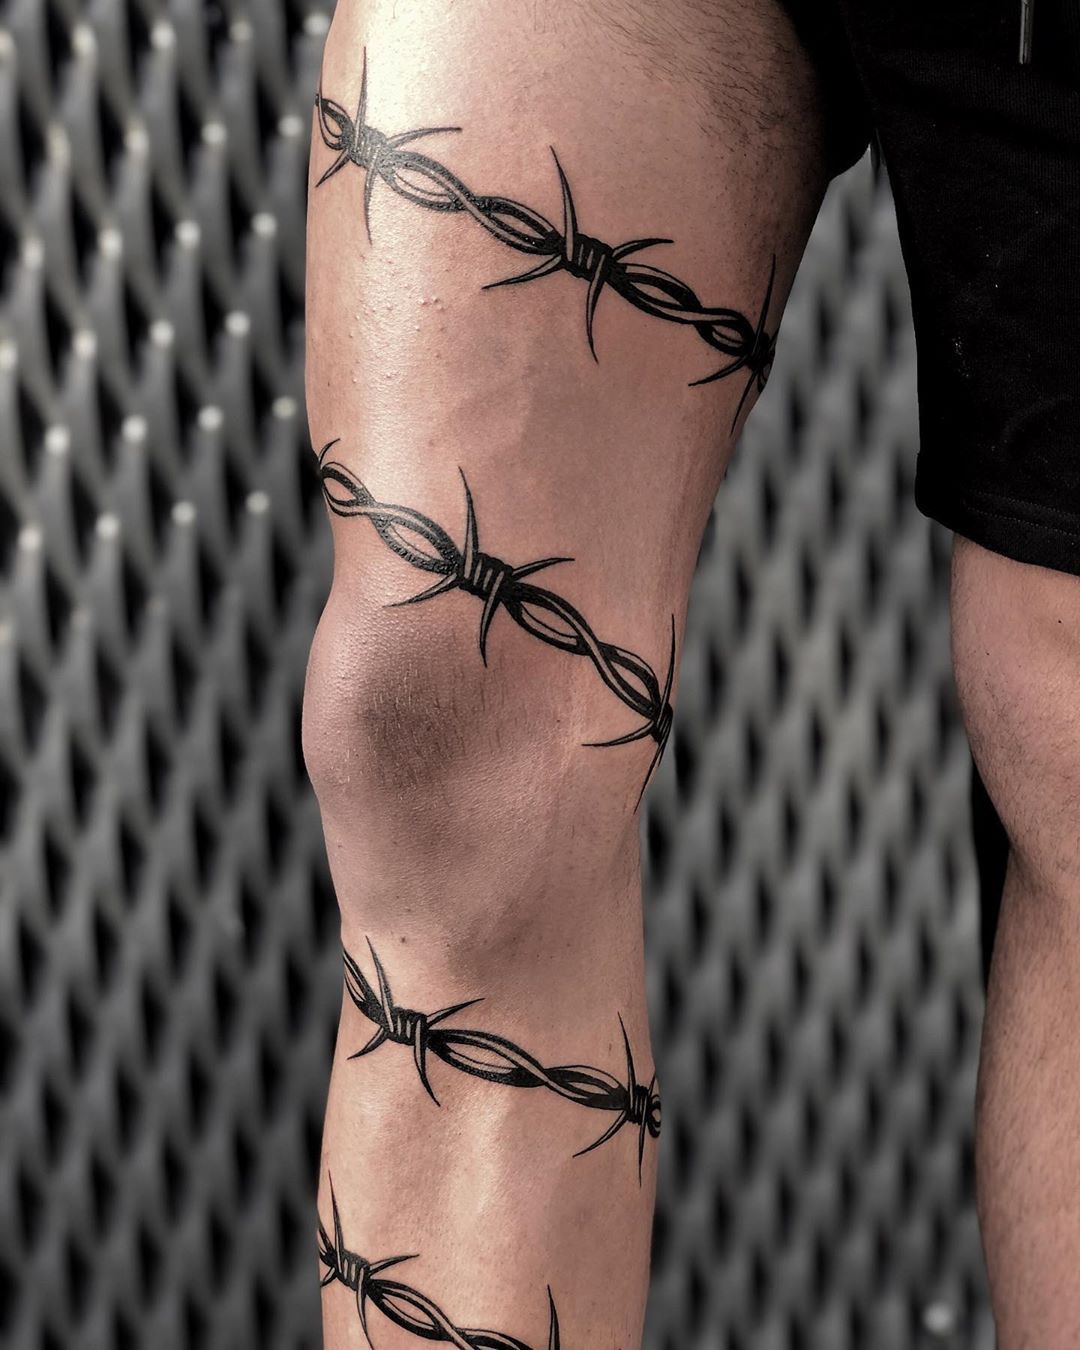 Tatuajes de vallas con púas: Diseños audaces para expresar tu estilo único